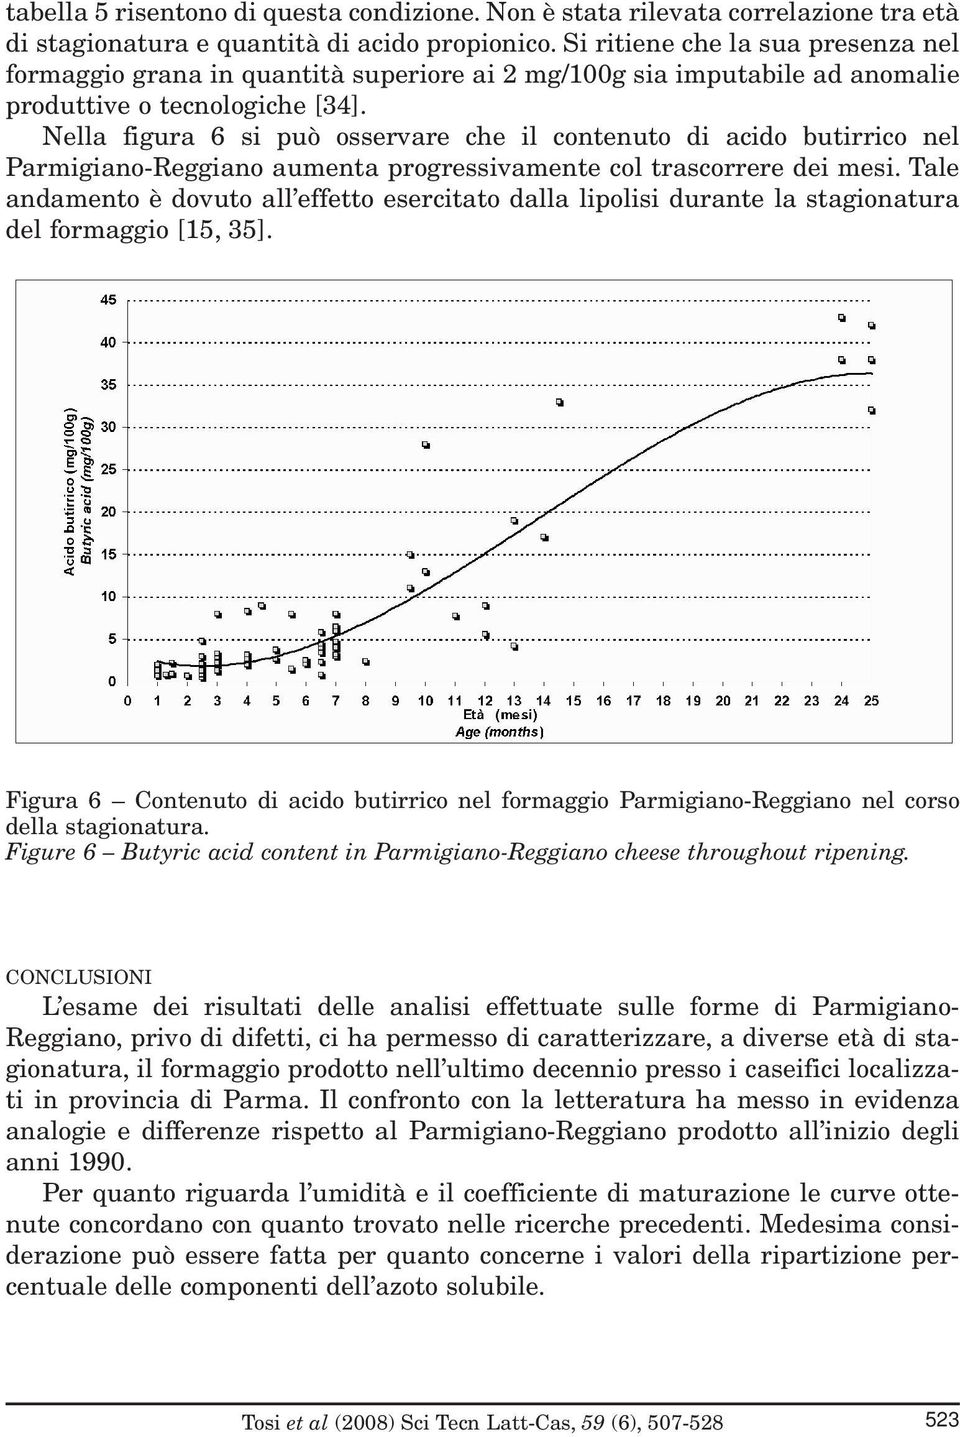 Nella figura 6 si può osservare che il contenuto di acido butirrico nel Parmigiano-Reggiano aumenta progressivamente col trascorrere dei mesi.